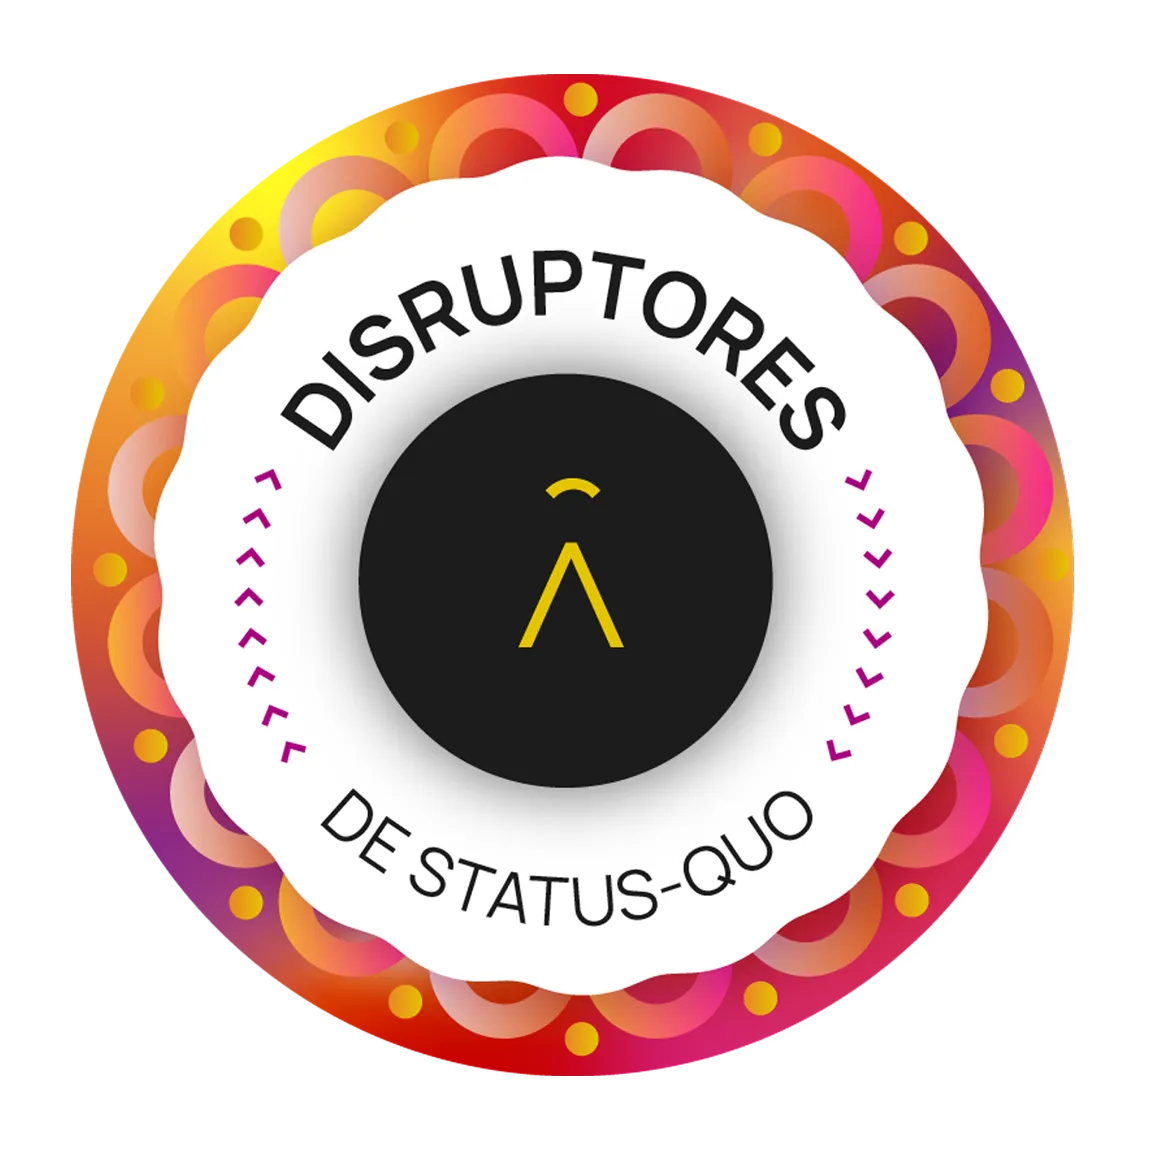 Disruptores de Status-Quo